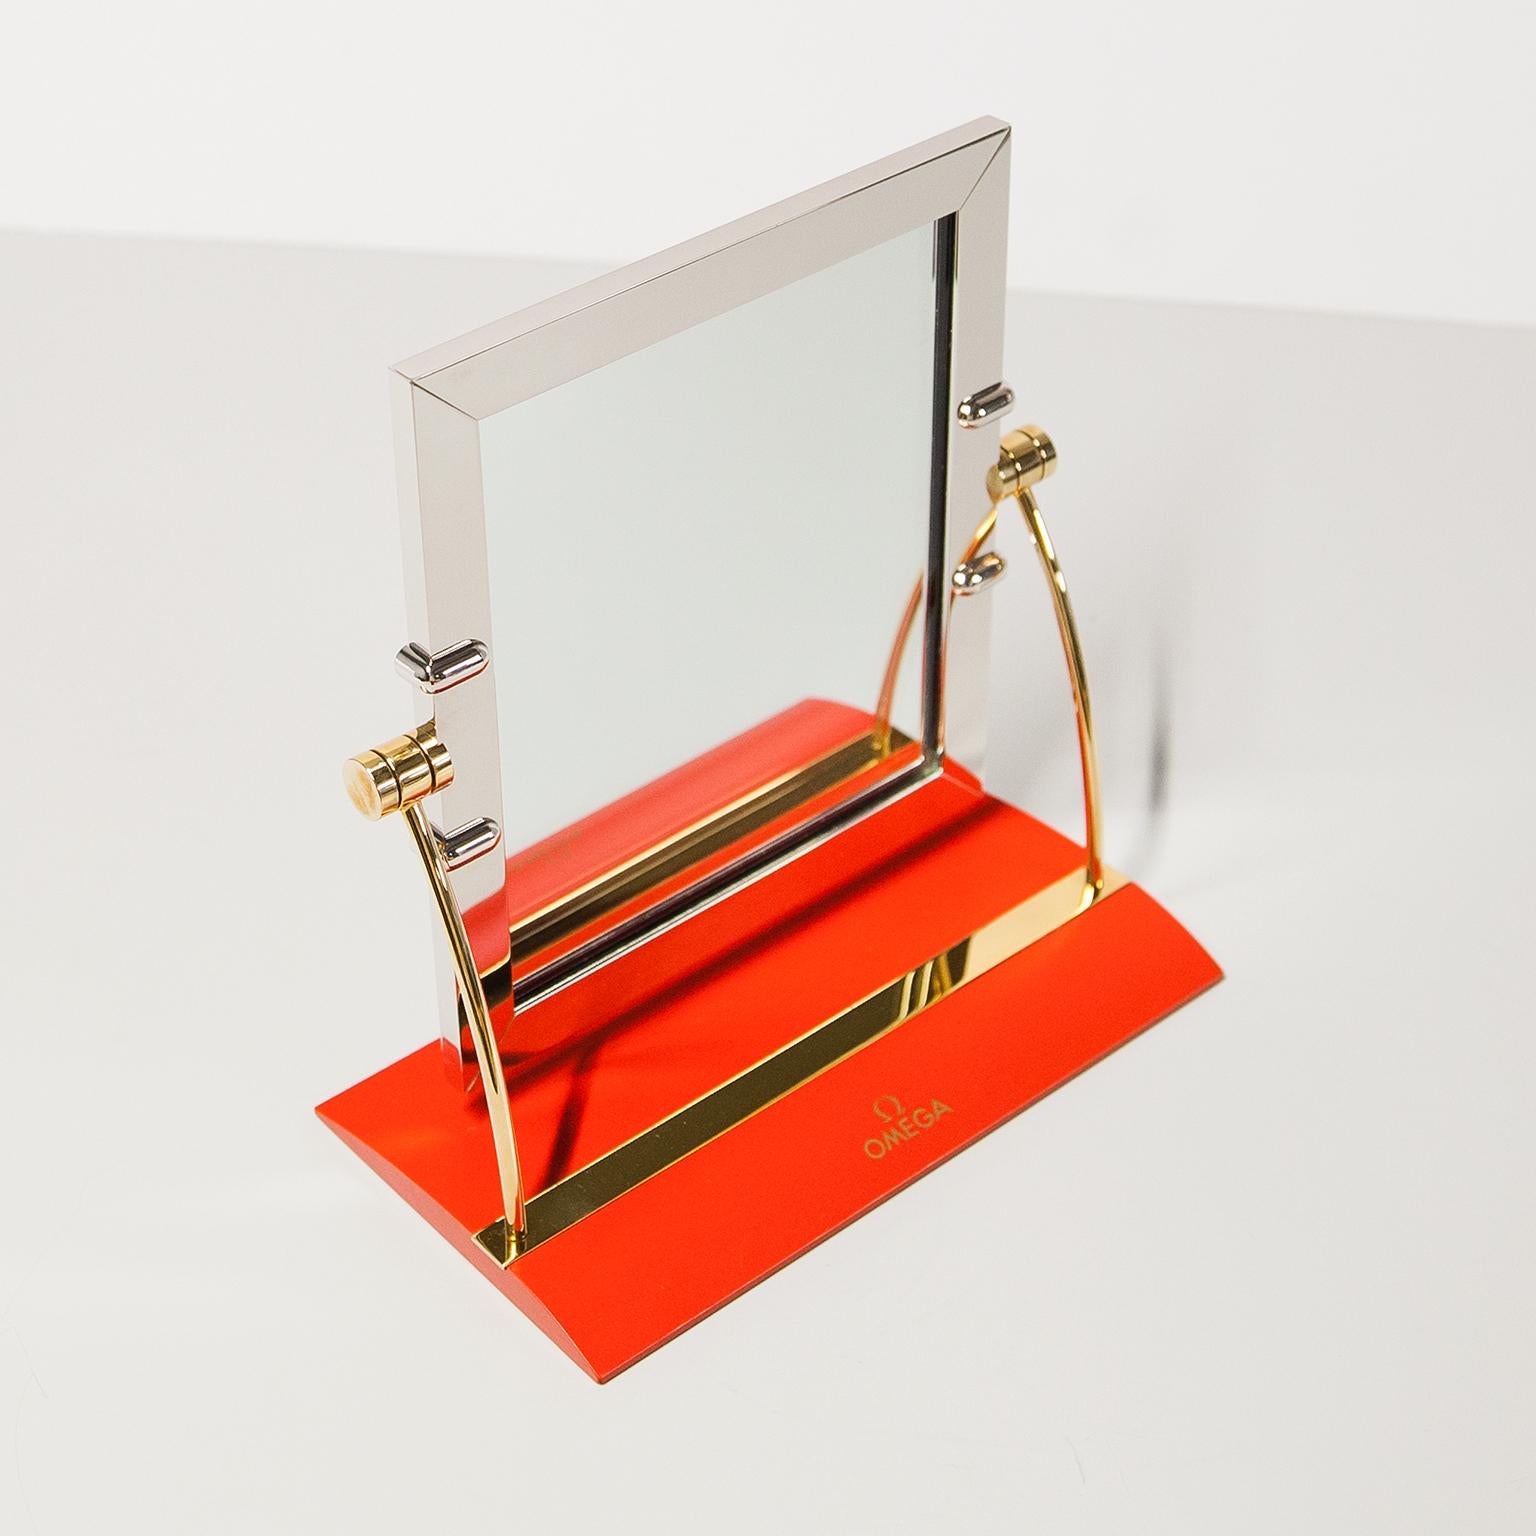 Original Omega verstellbarer Tisch-Ladenspiegel aus Stahl und rotem Leder. Ein Sammlerstück mit hohem Wiedererkennungswert und ein Muss für jeden Uhrenliebhaber oder Uhrenenthusiasten. In sehr gutem Vintage-Zustand, ohne Risse oder Brüche.